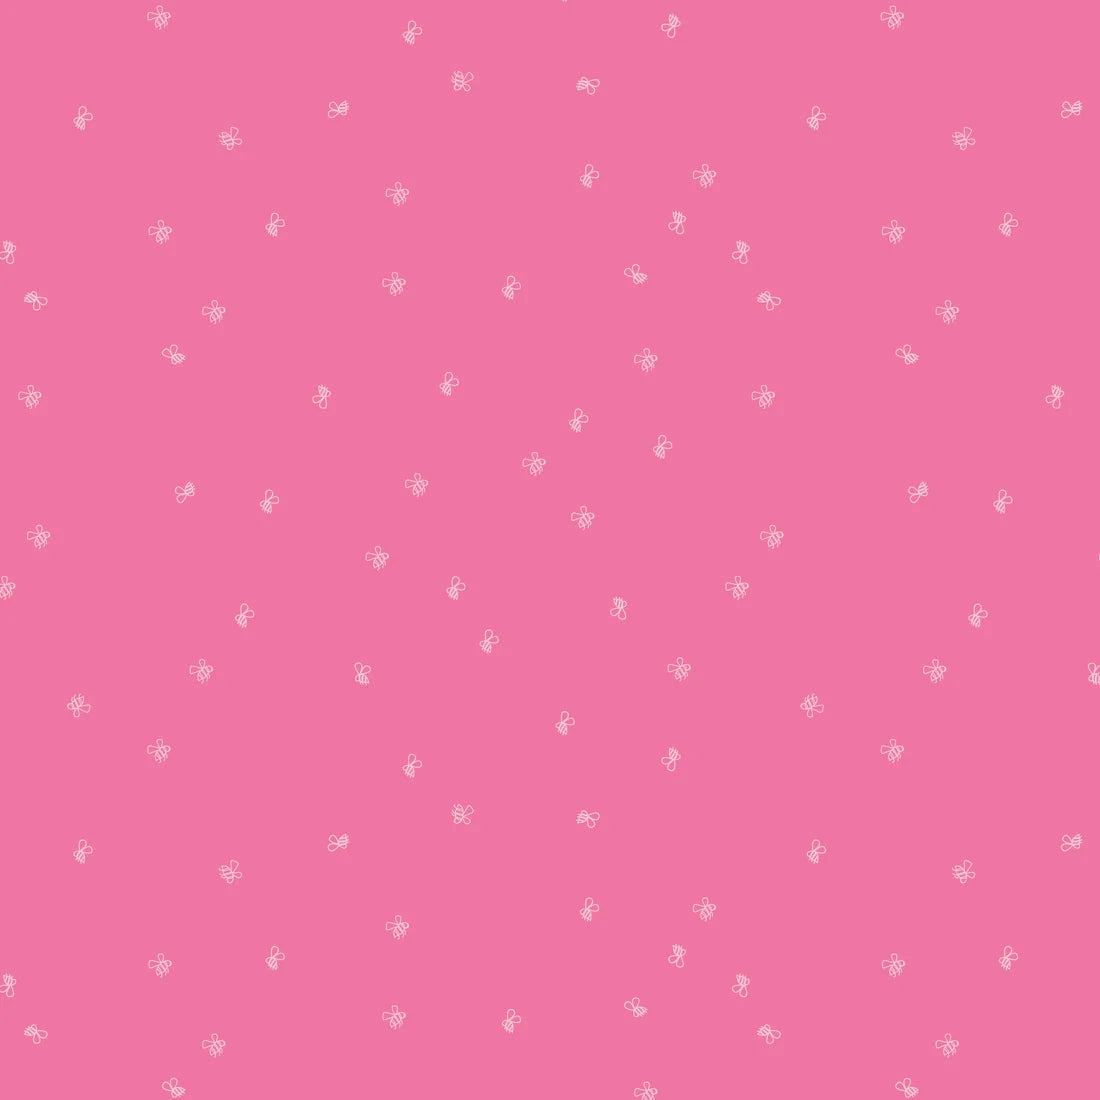 New Dawn Hot Pink Bees - Riley Blake Designs - *OOP